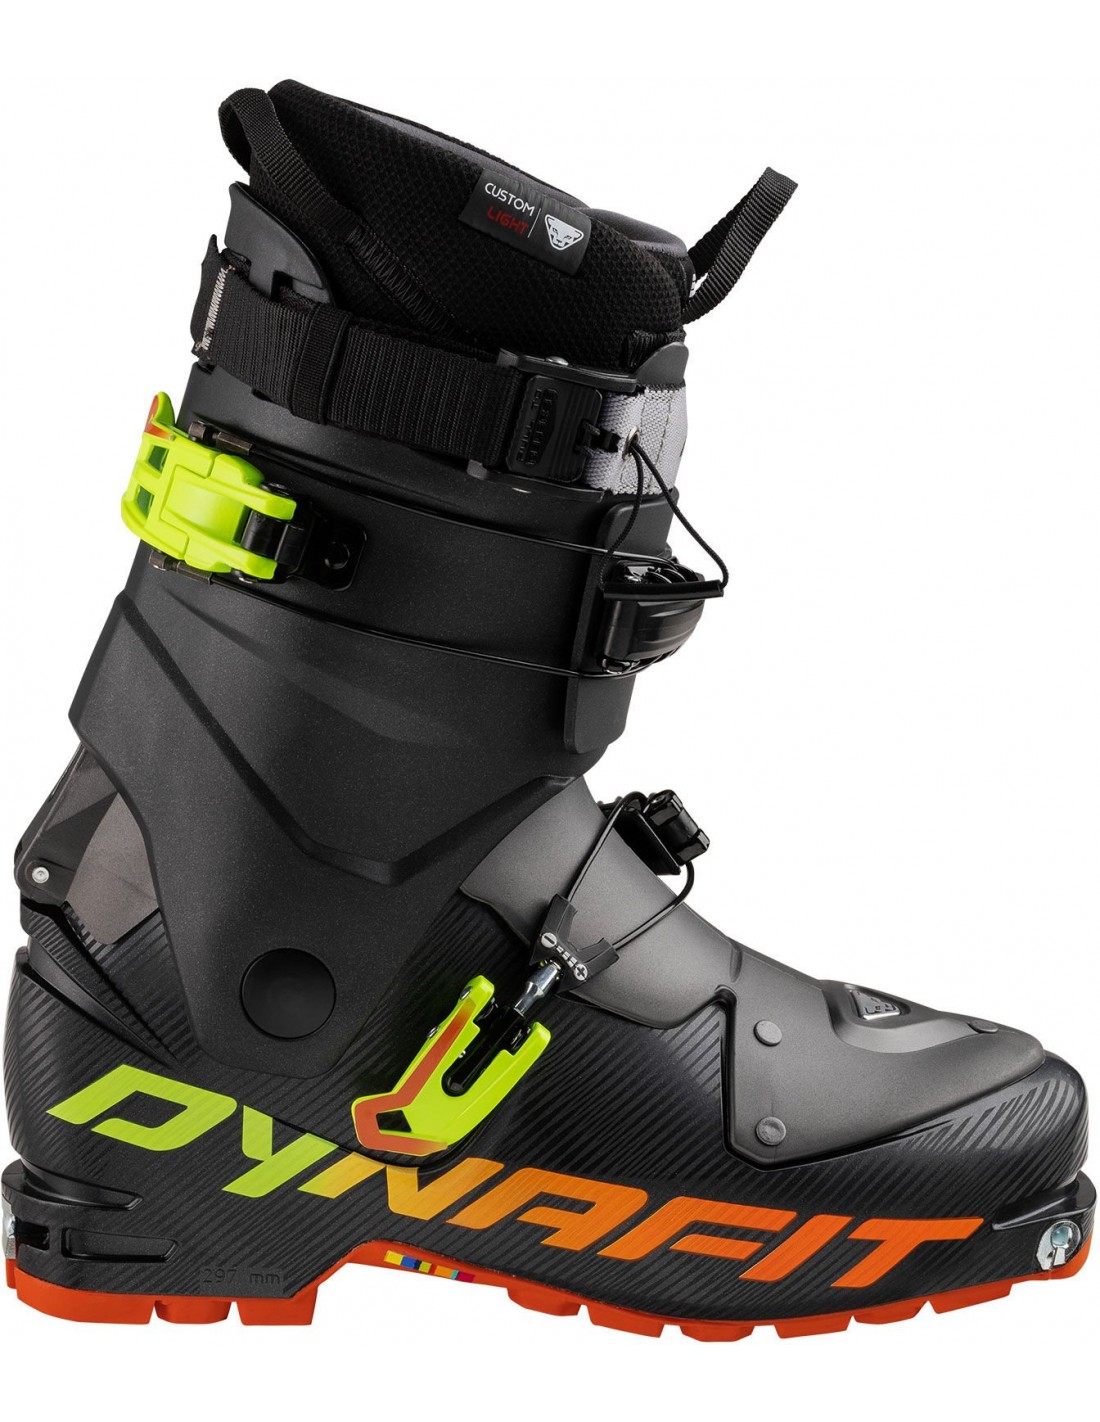 Dynafit Skitourenschuh TLT Speedfit Black/Fluo Orange Einsatzbereich - Ski Touring, Skischuhgröße - 23,5, Skischuhgewicht (Paar) - 1101 - 1200 g, von Dynafit